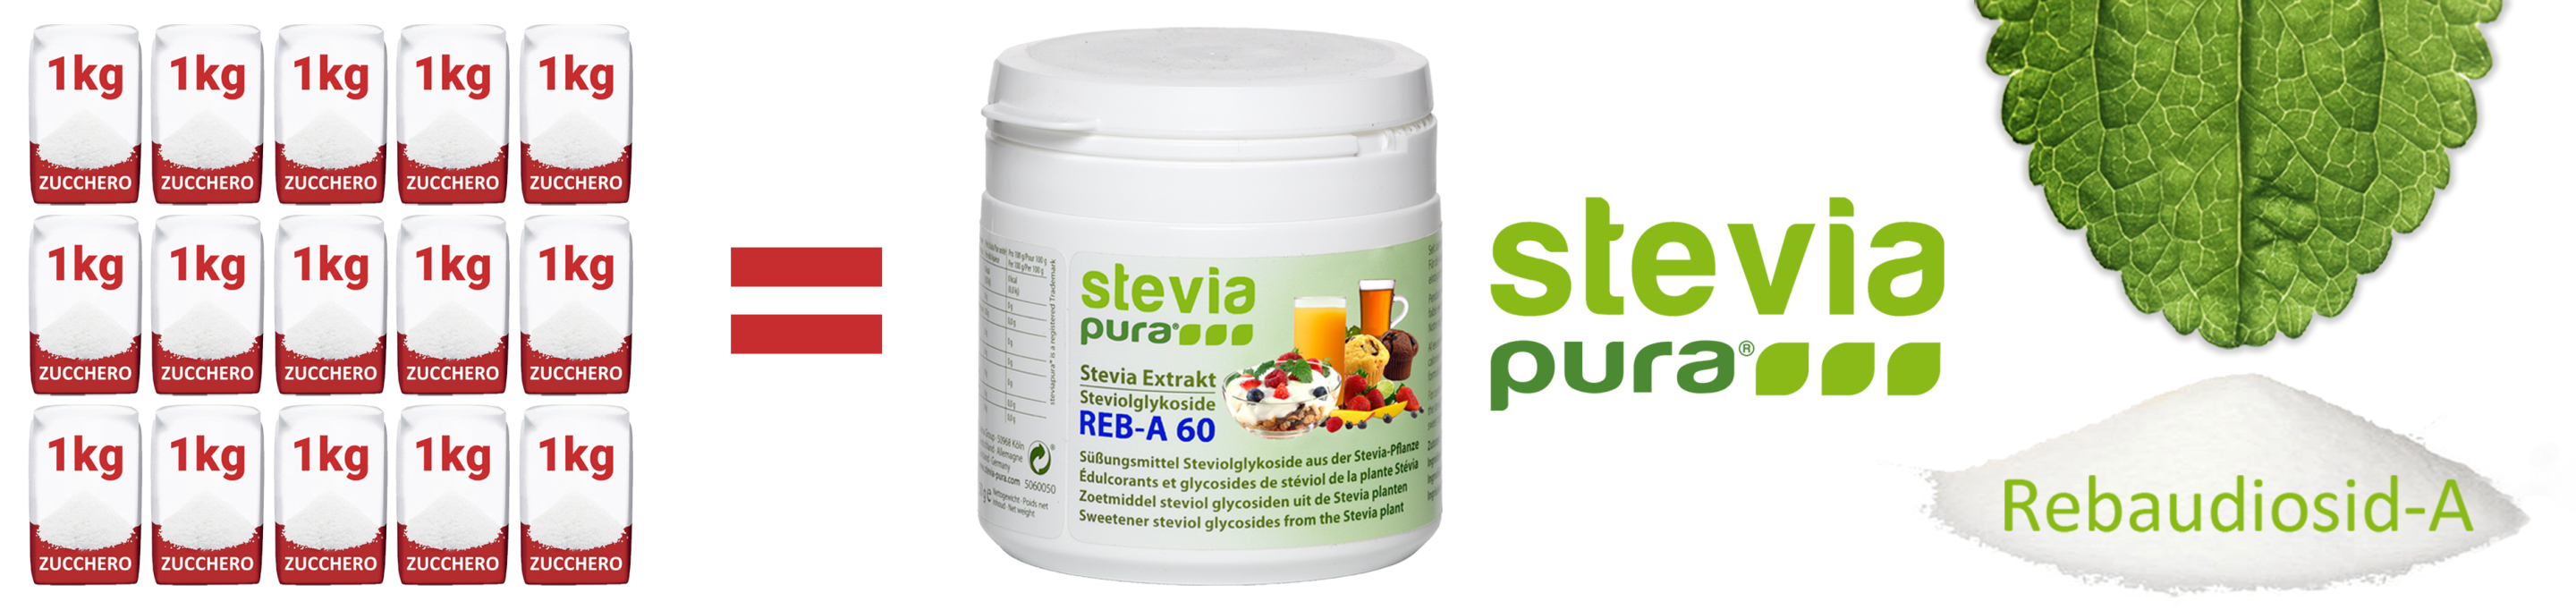 Stevia pura in polvere Rebaudioside-A 60% Estratto di...